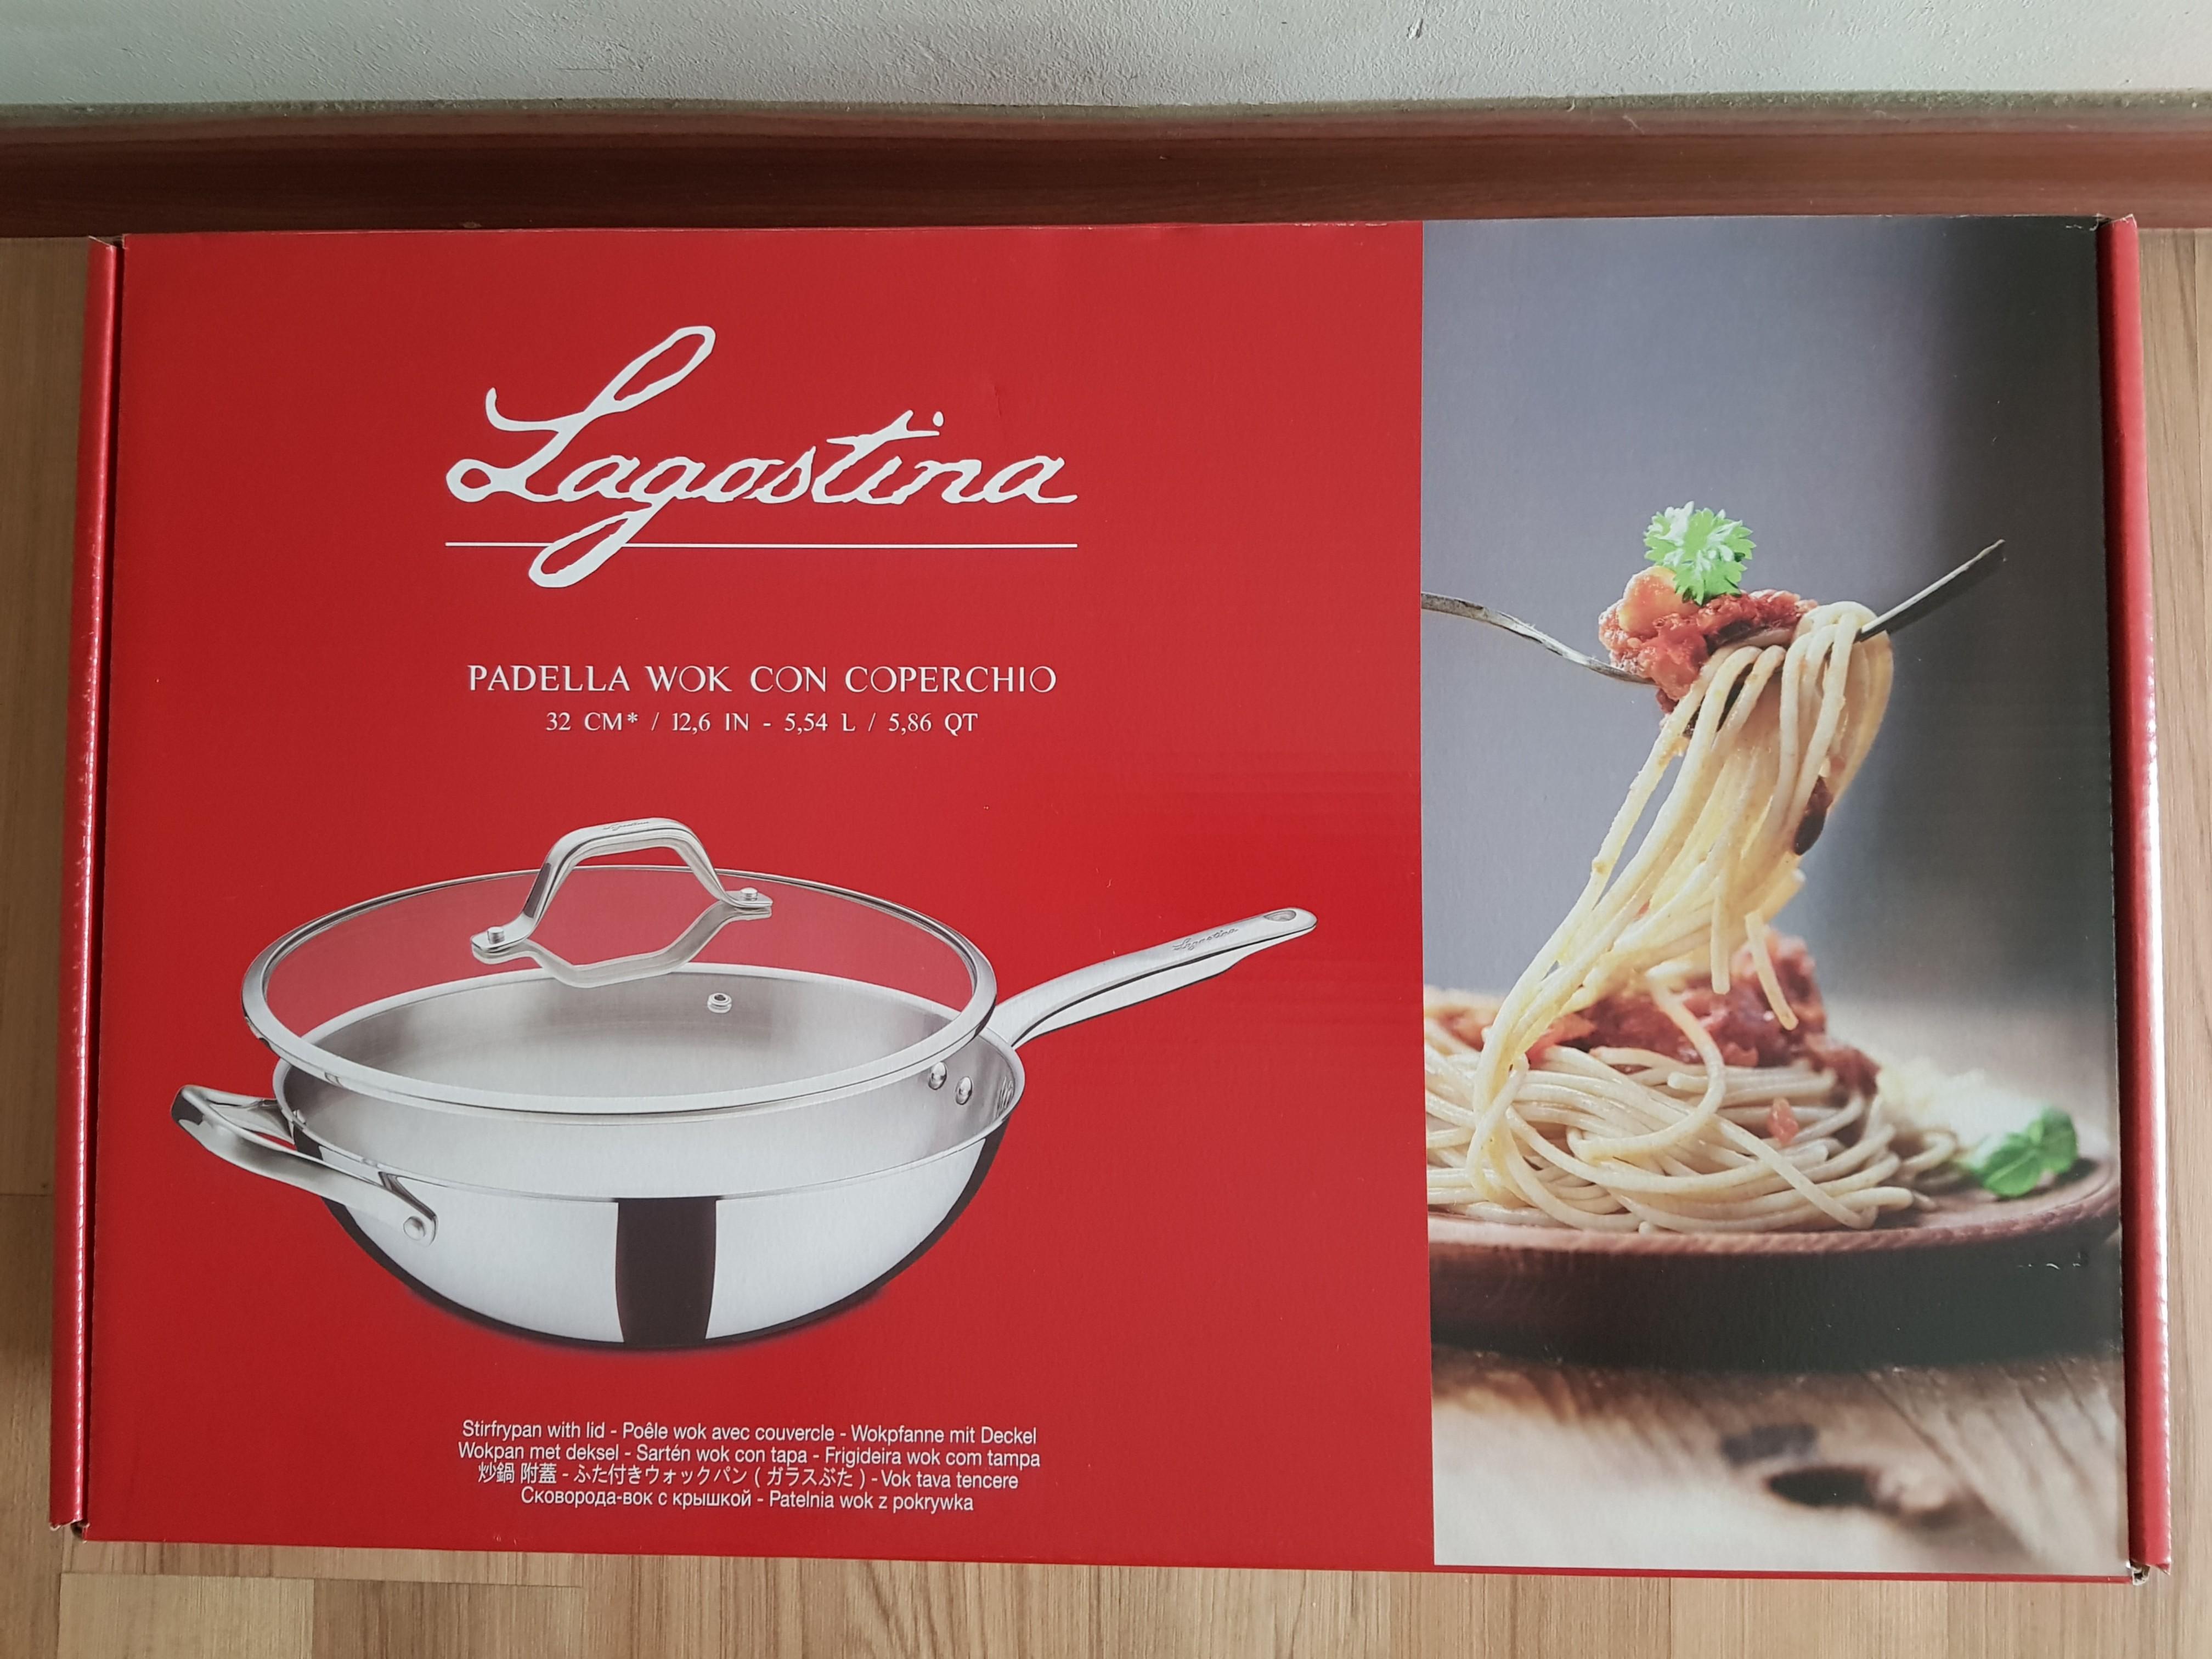 Lagostina - Padella Wok Con Coperchio (32 cm), Furniture & Home Living,  Kitchenware & Tableware, Cookware & Accessories on Carousell